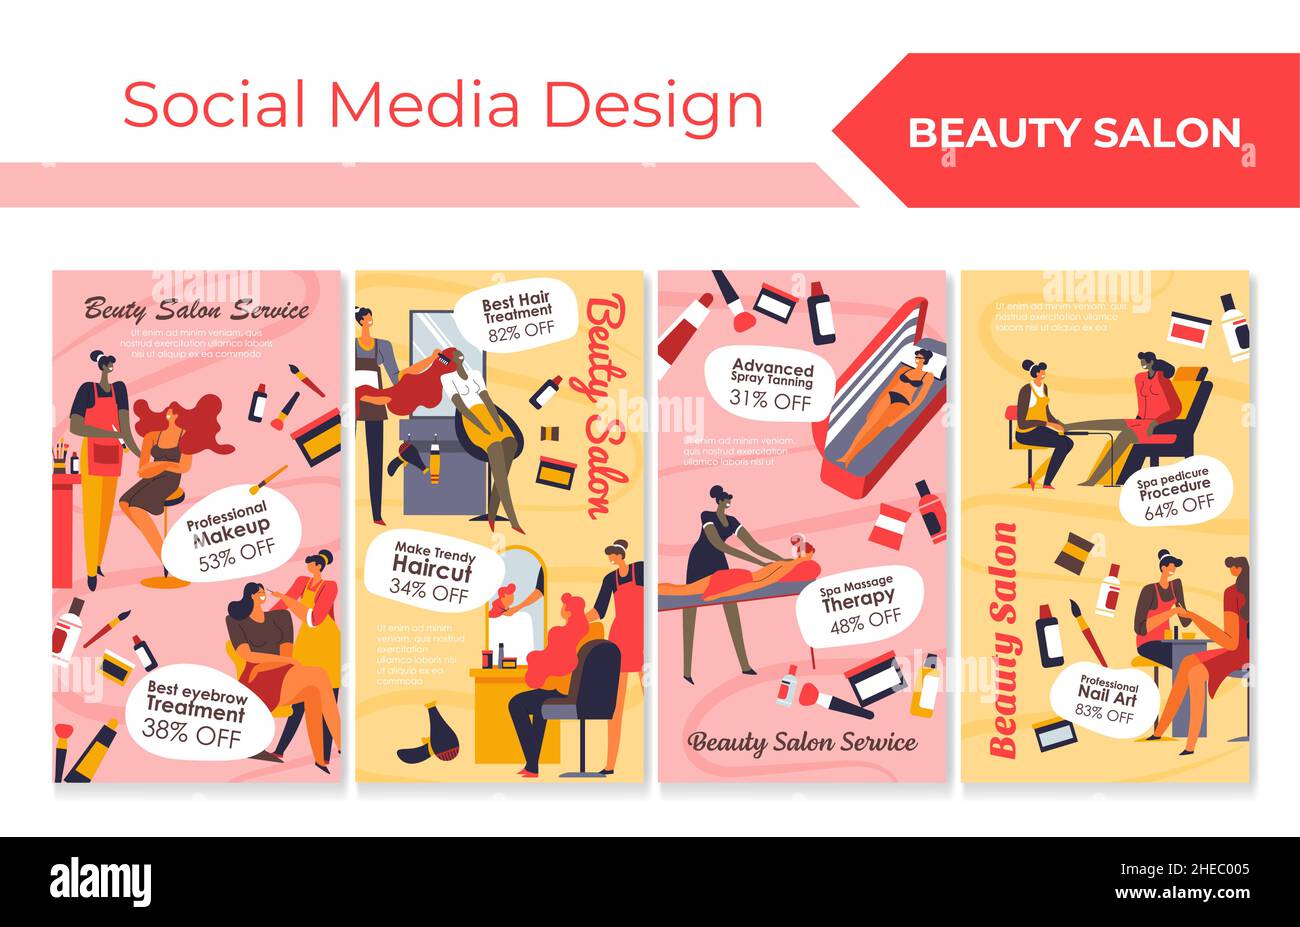 Beauty salon service offer at social media design Stock Vector